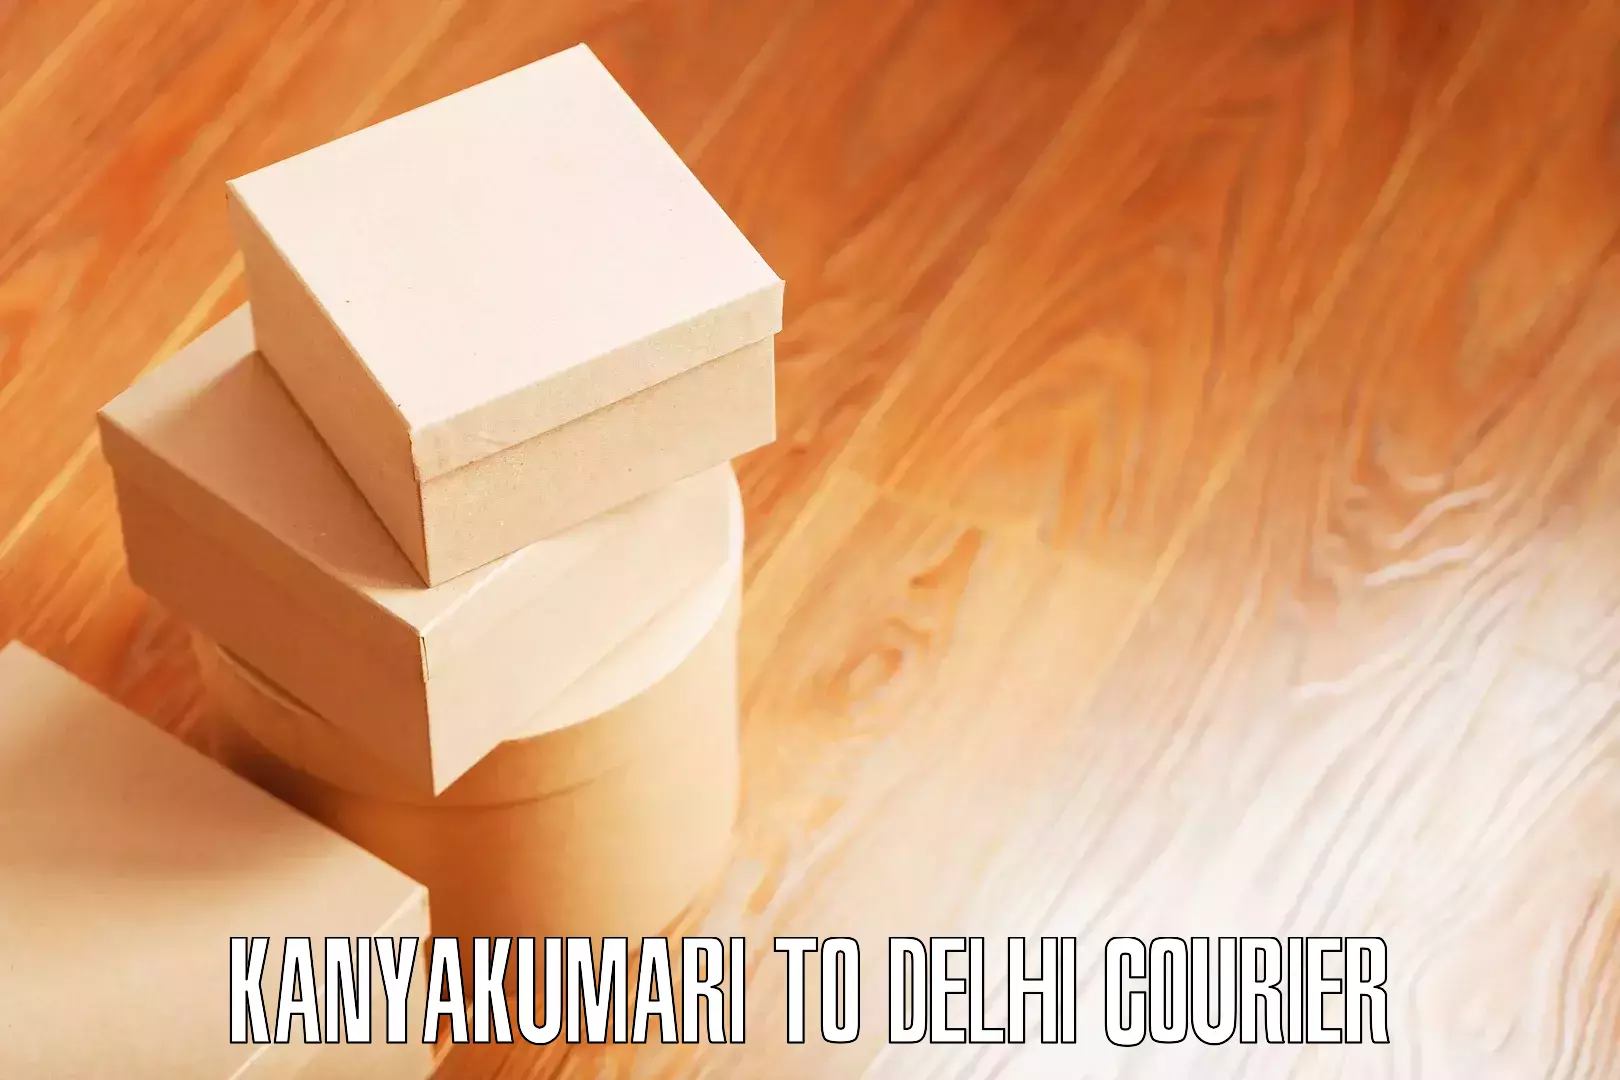 Budget-friendly moving services Kanyakumari to Delhi